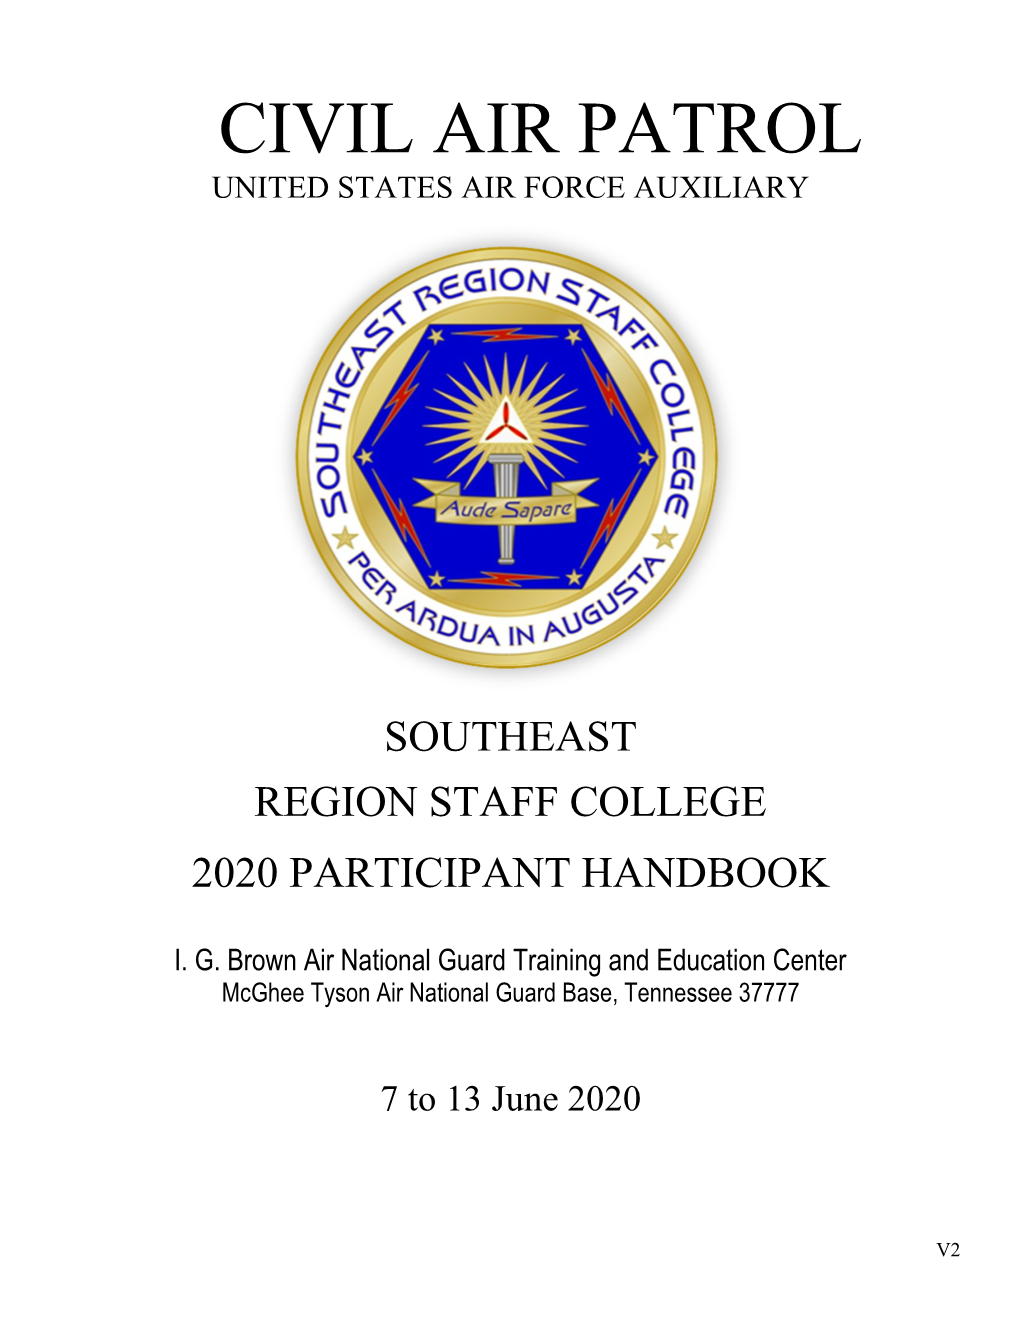 2020 Region Staff College Handbook